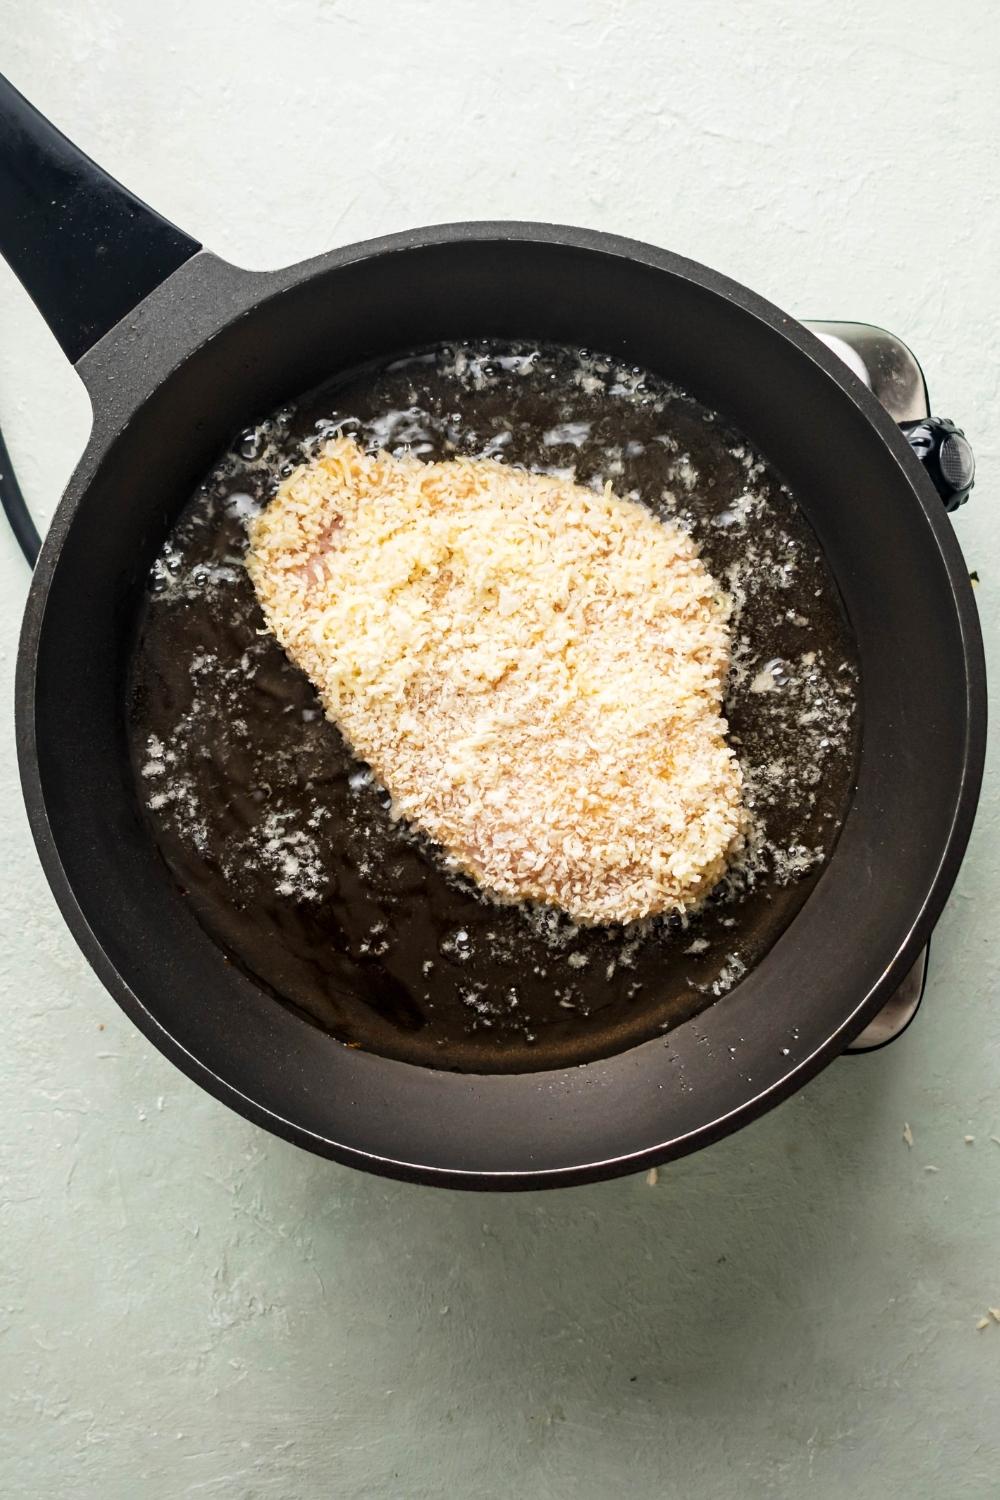 A breaded chicken cutlet in oil in a pan.